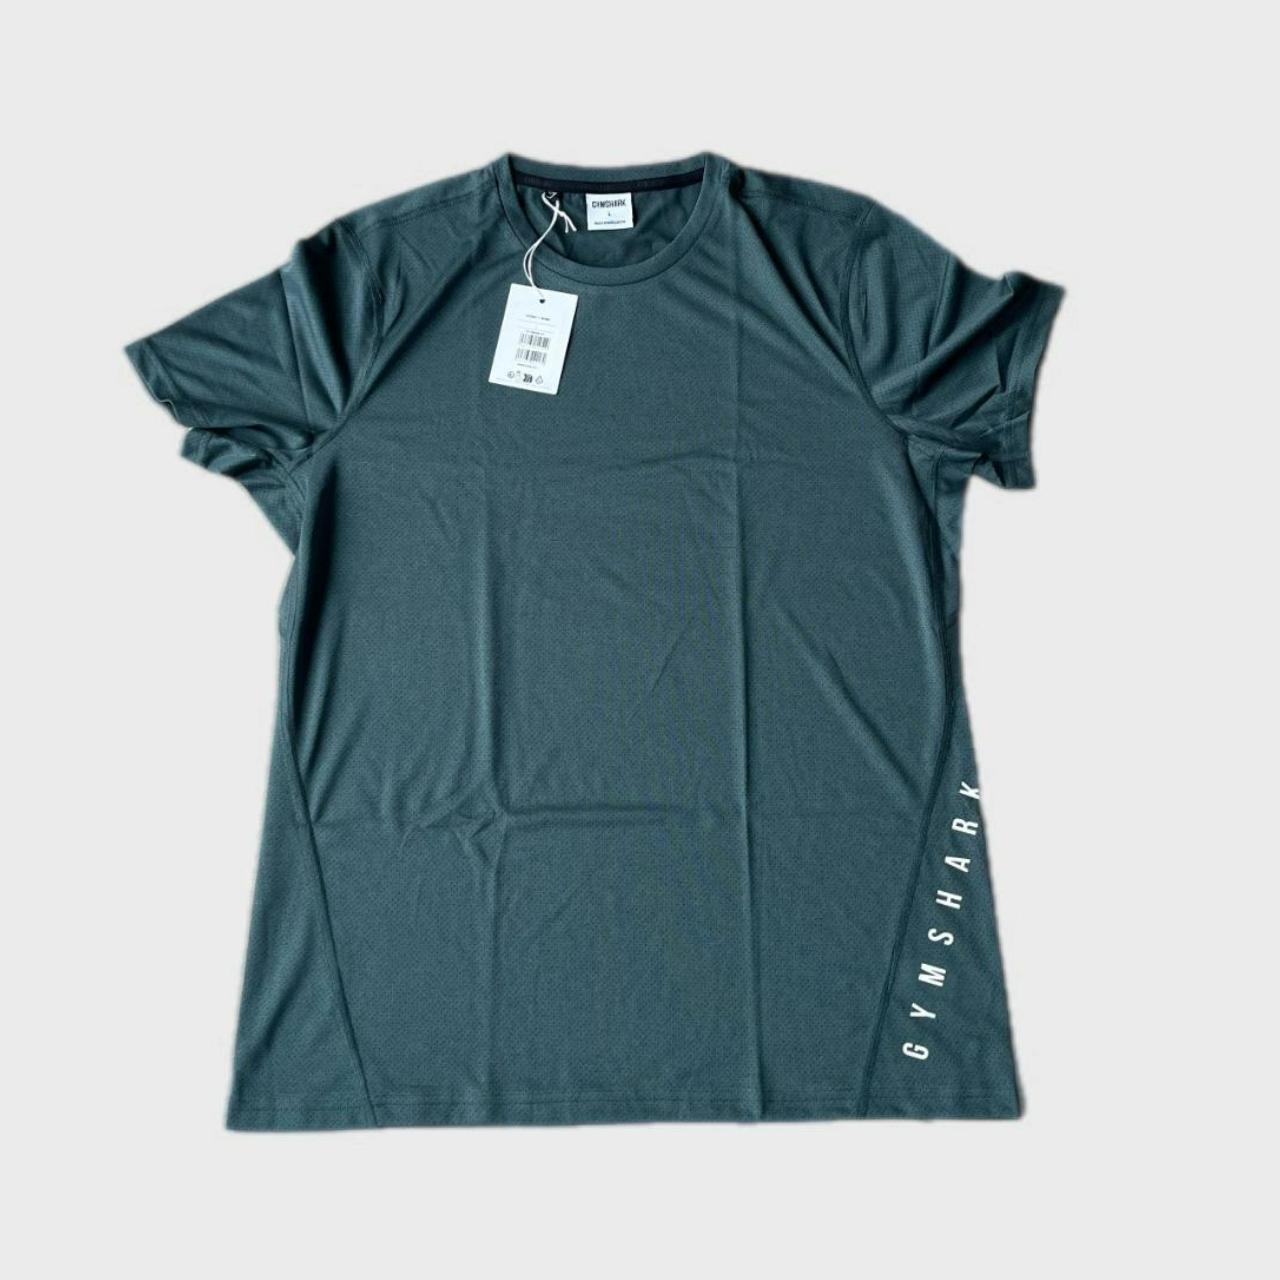 GYMSHARK Sport T Shirt In Fog Green Size Large... - Depop